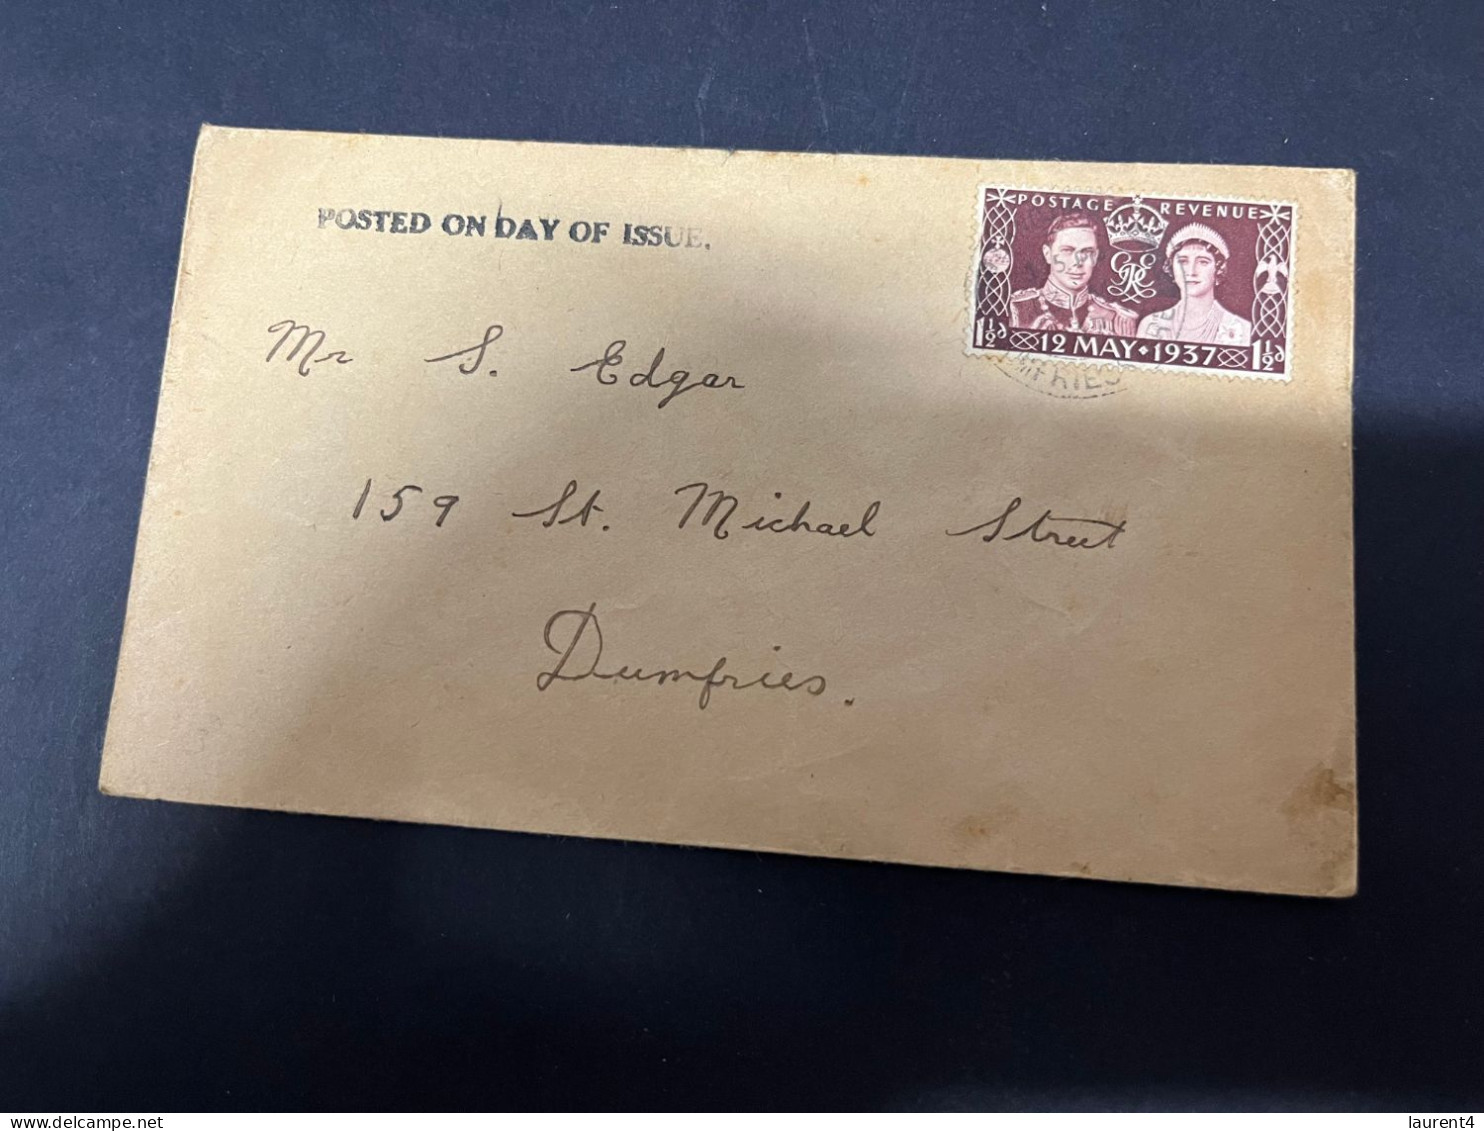 7-11-2023 (1 V 34) UK FDC Letter Posted To Dumfries (1937) - ....-1951 Vor Elizabeth II.